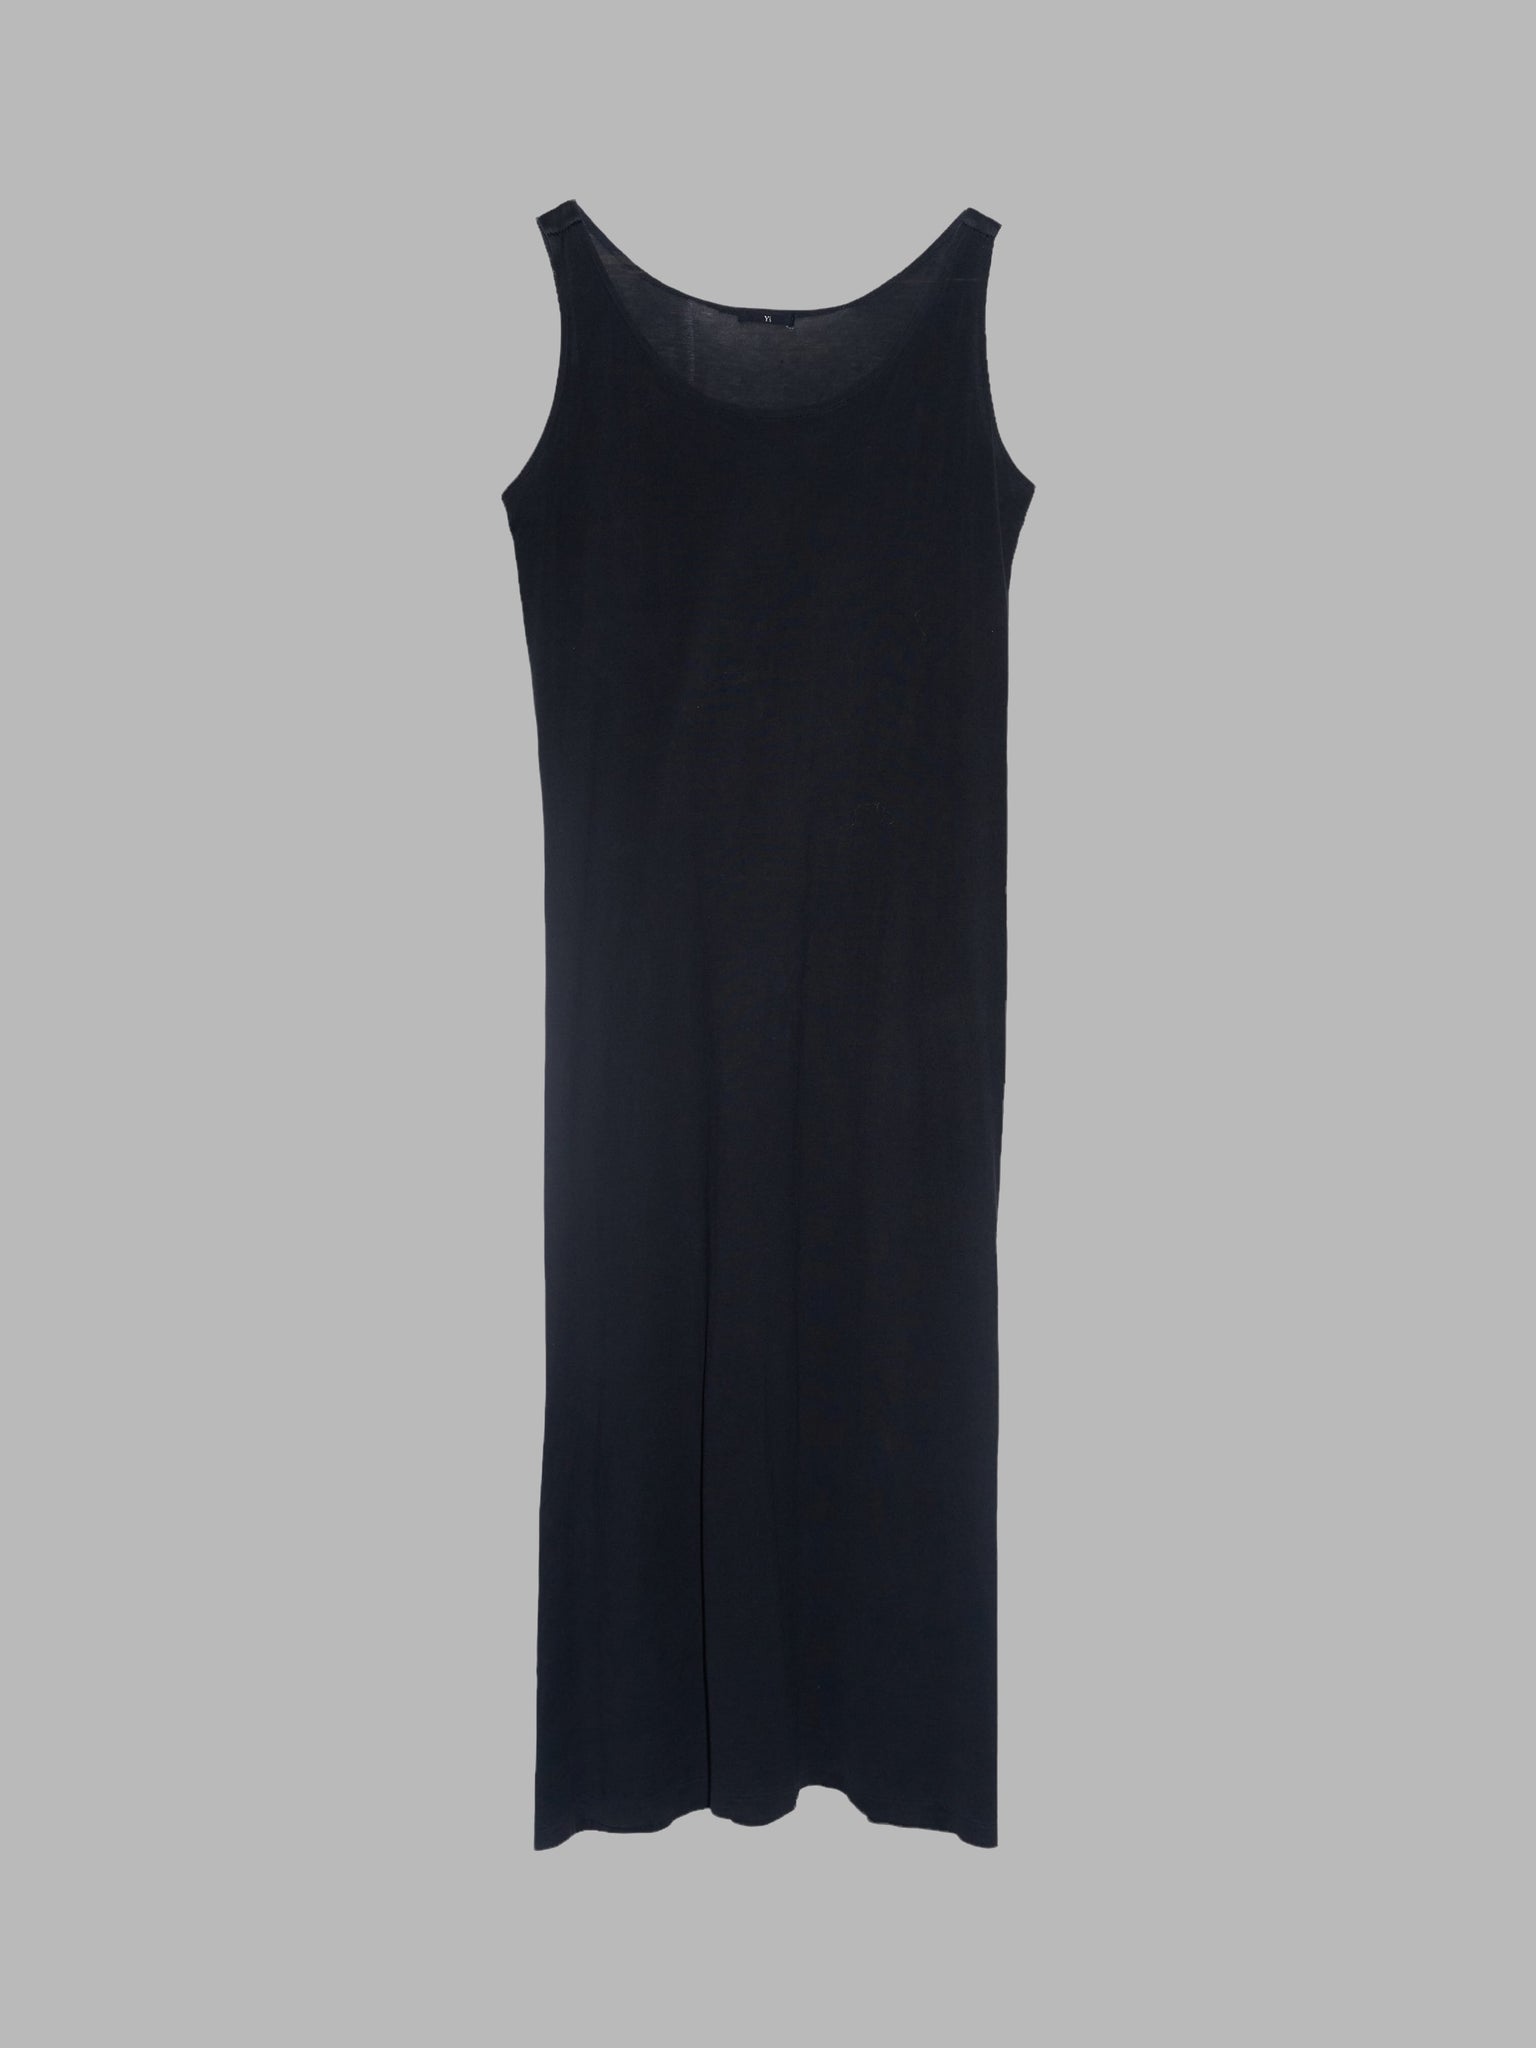 Y's Yohji Yamamoto black cotton jersey sleeveless maxi dress